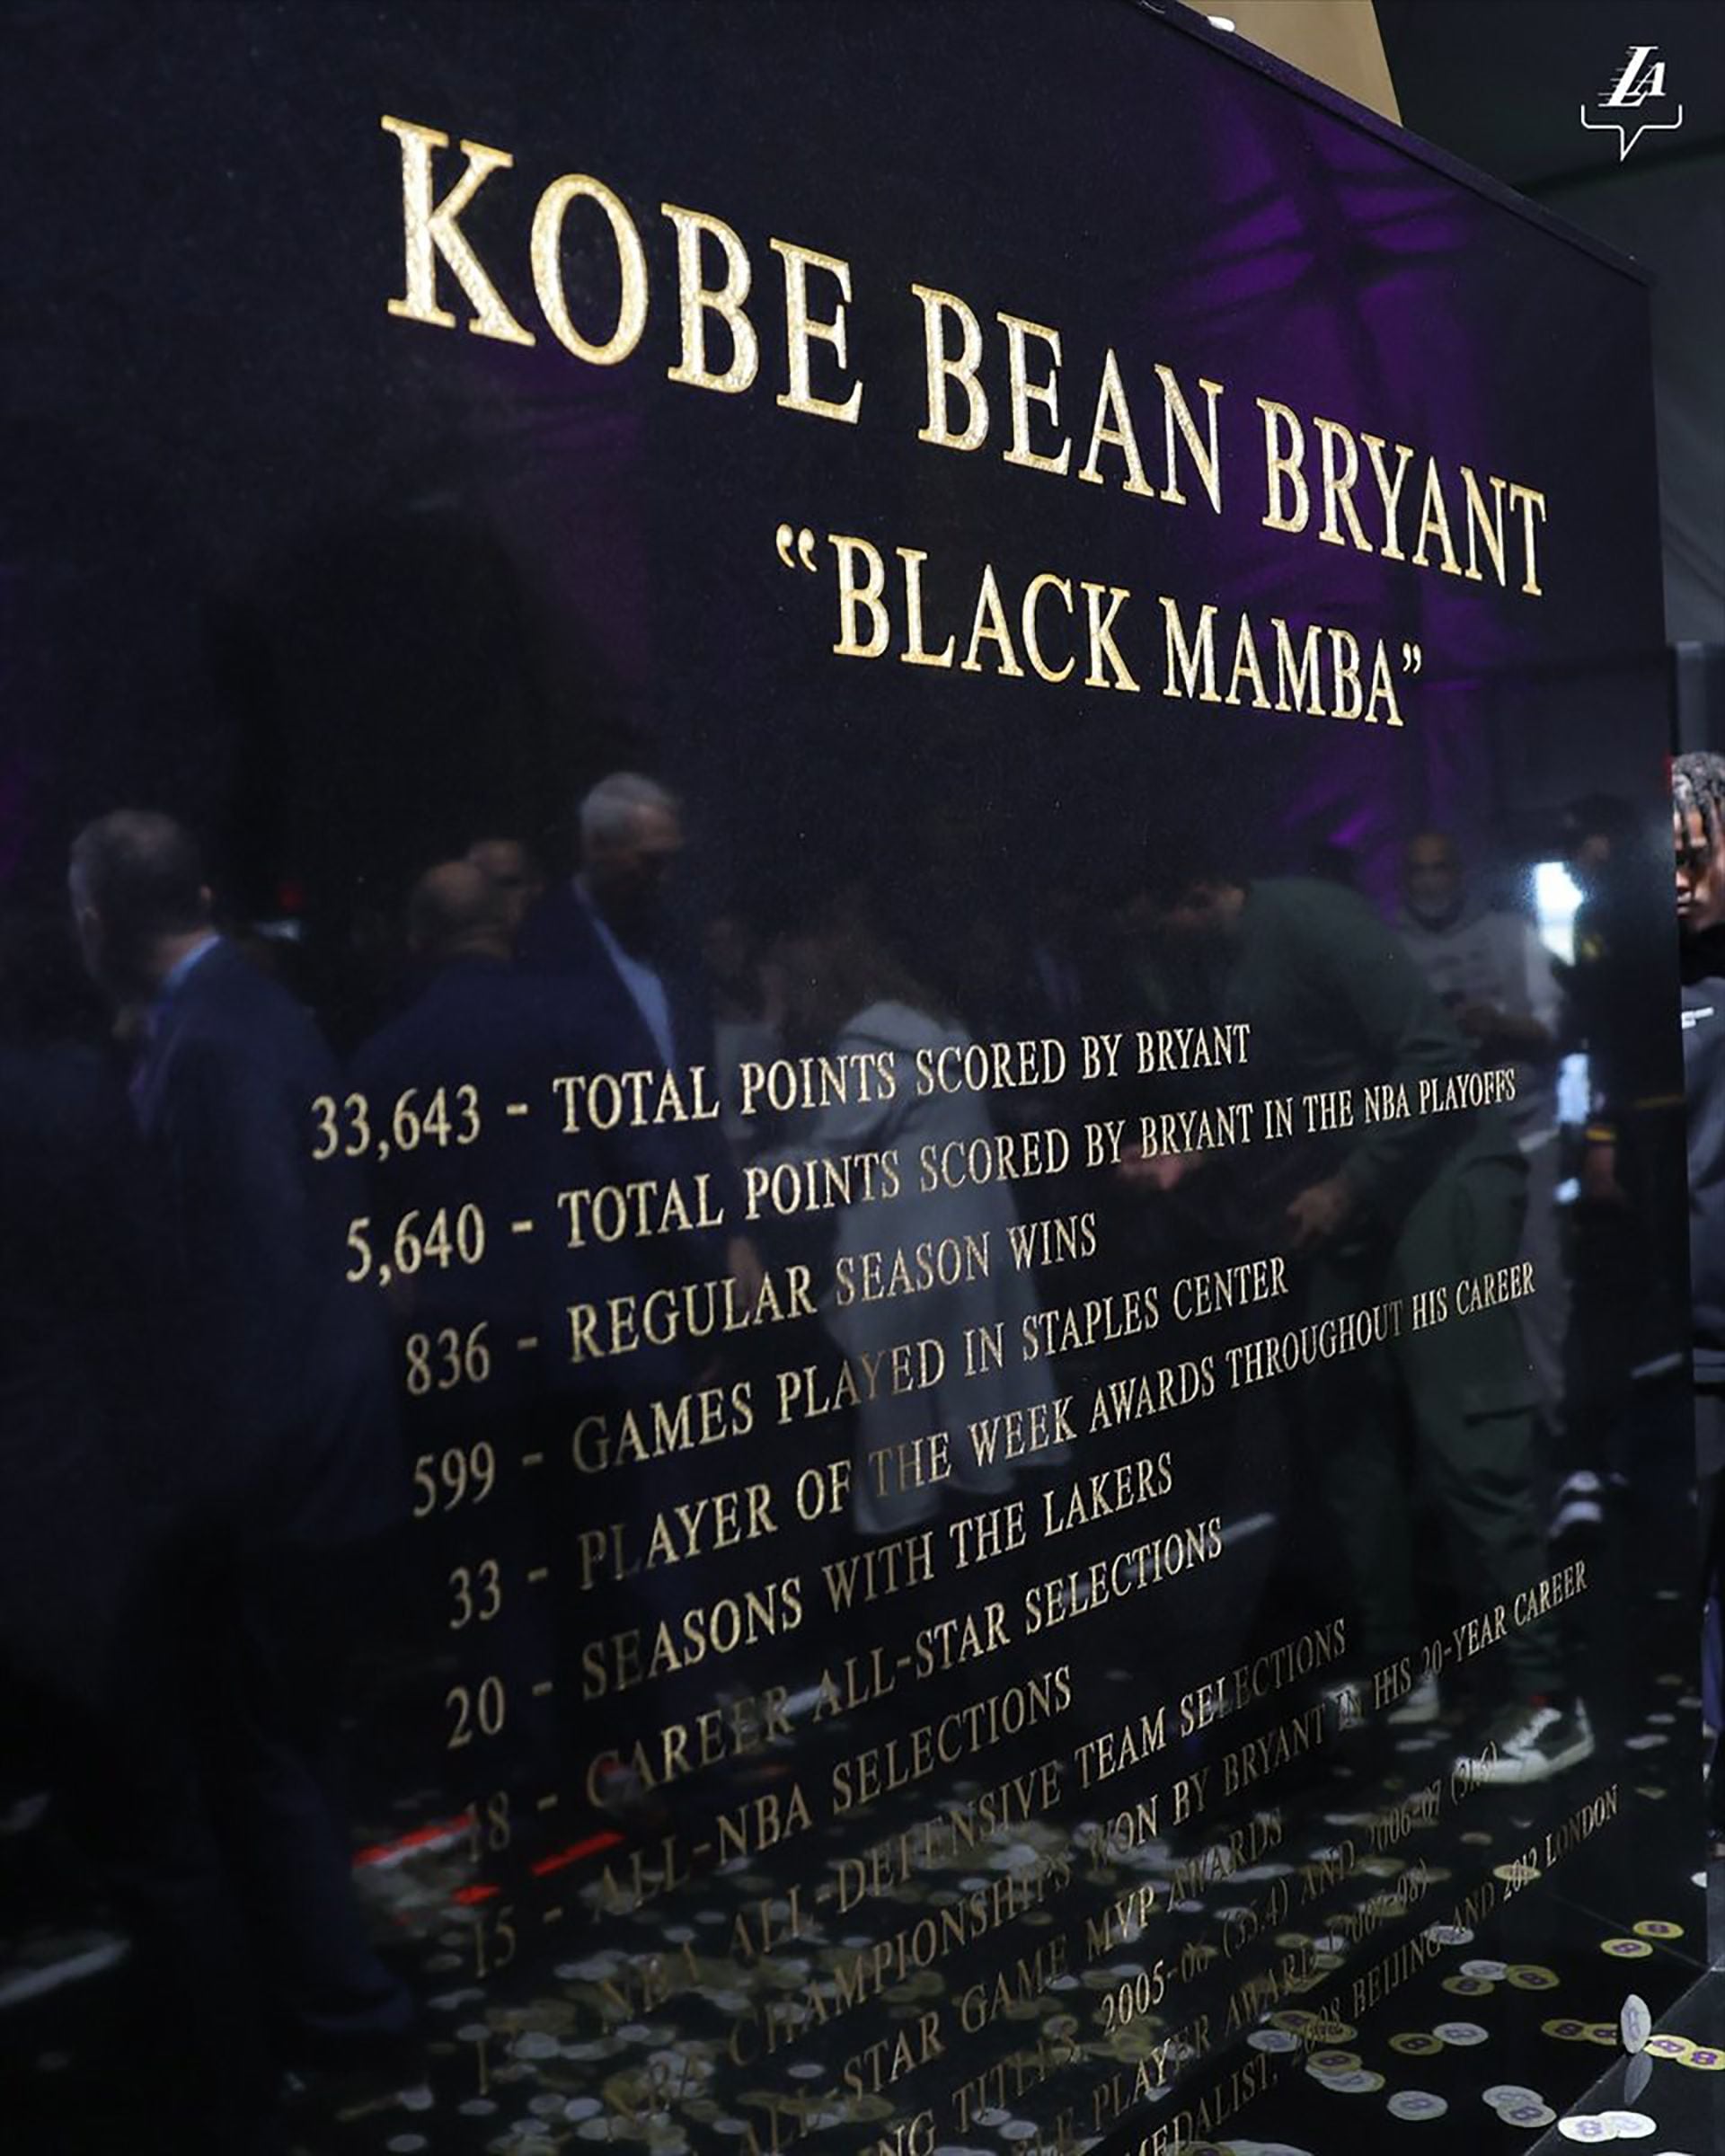 Los Ángeles Lakers dio a conocer la estatua de Kobe Bryant